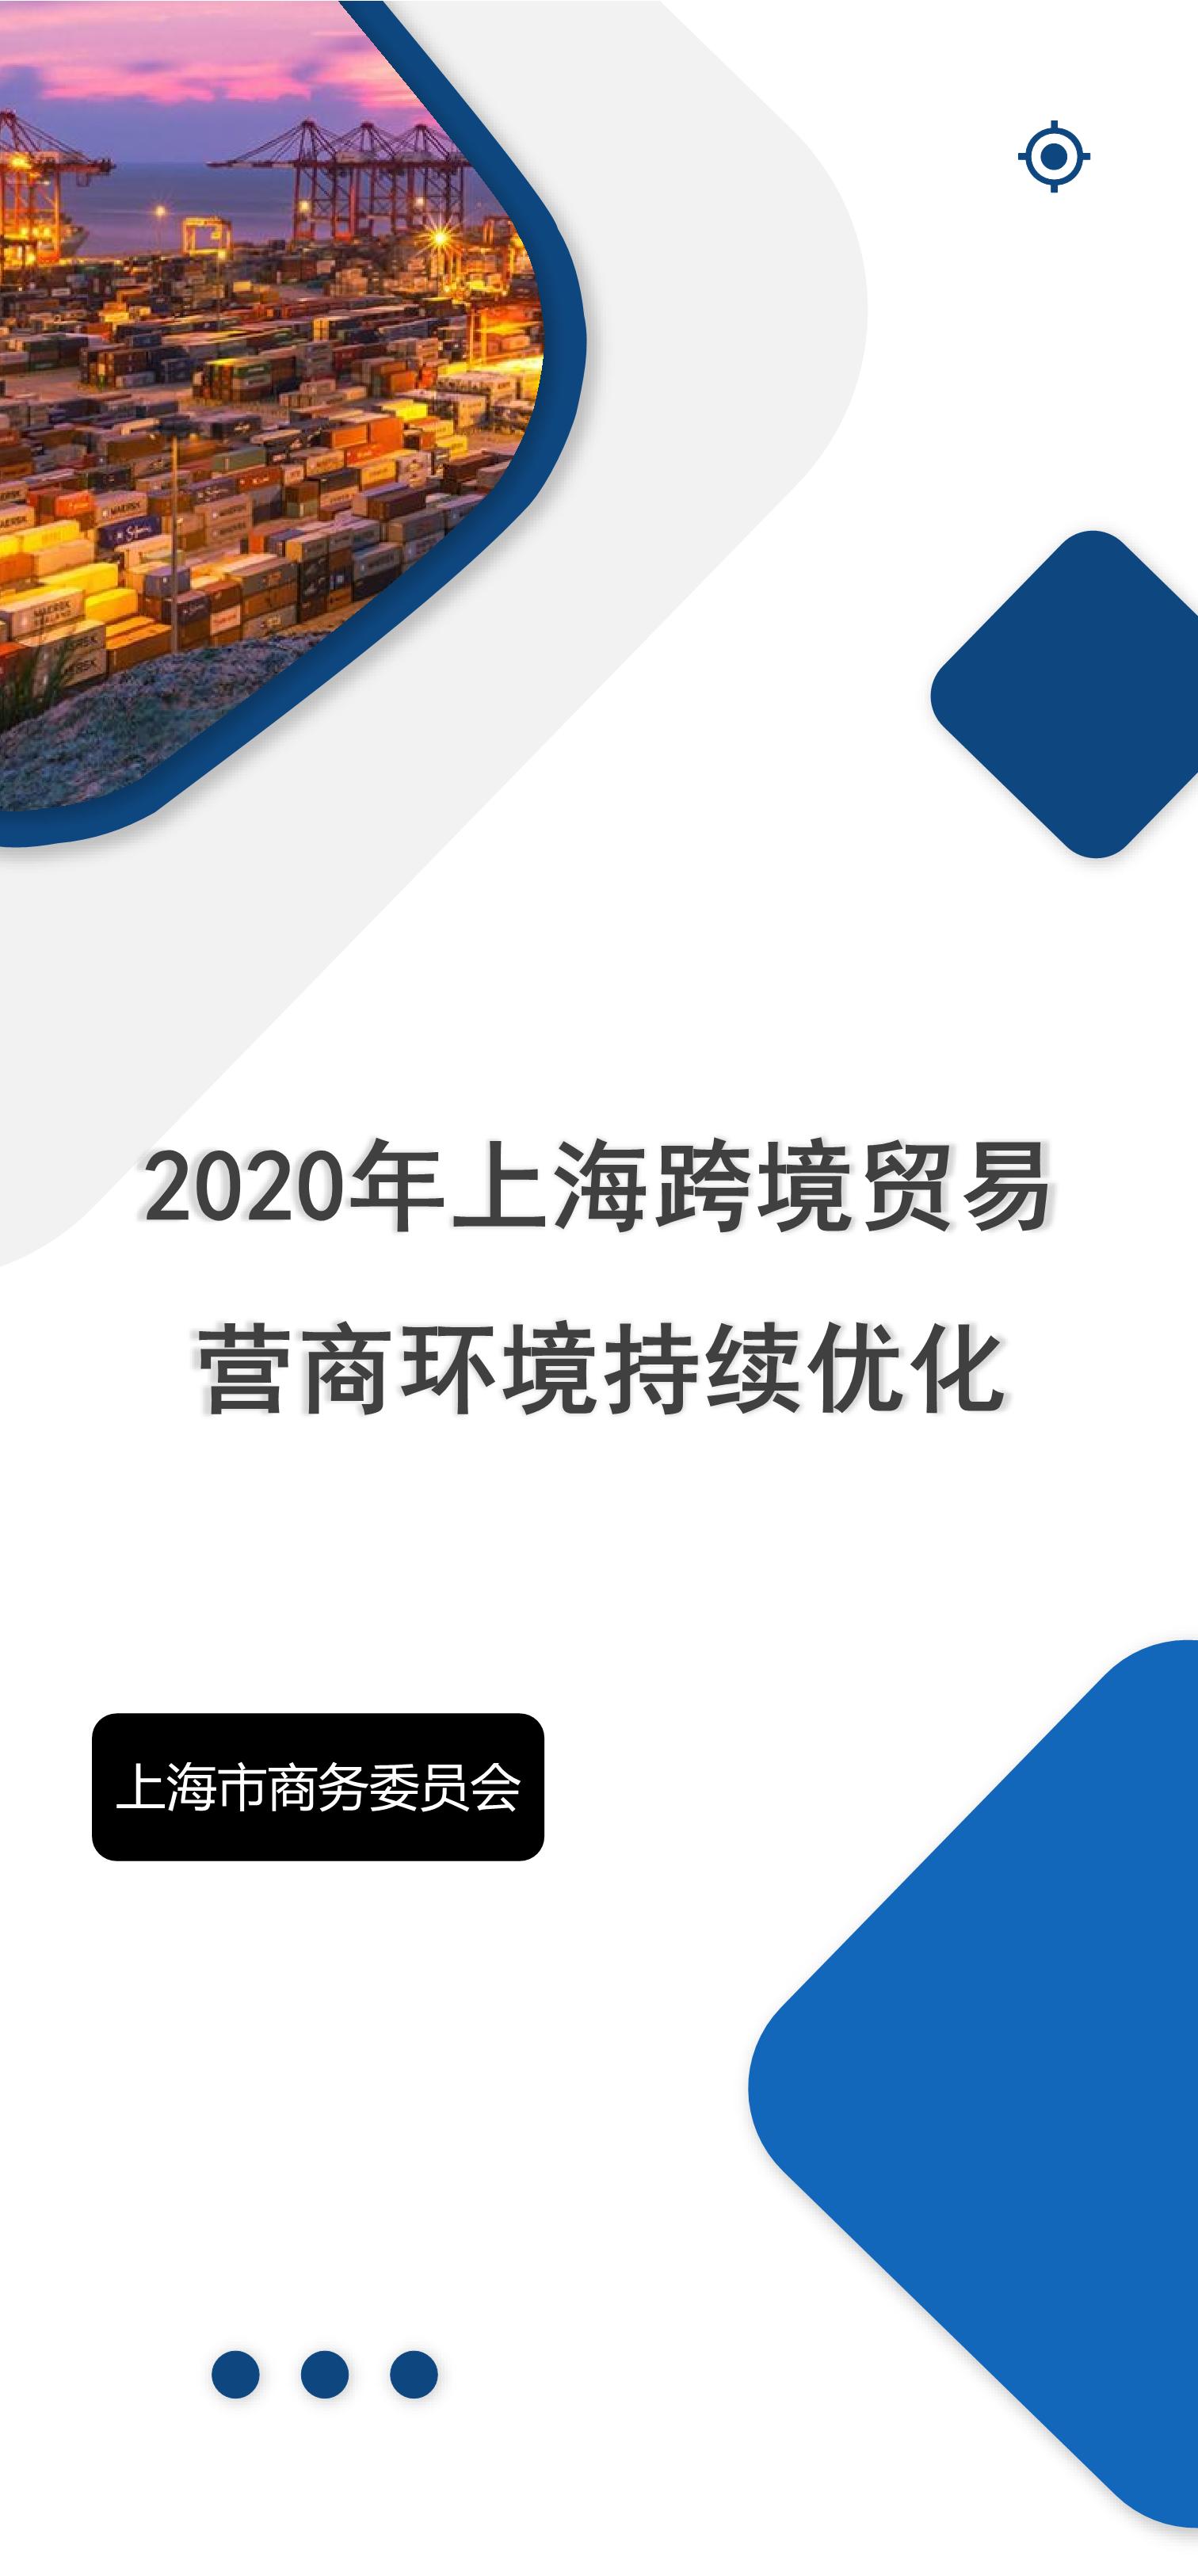 一张图回顾2020：提效降费优化流程 上海跨境贸易营商环境持续优化！